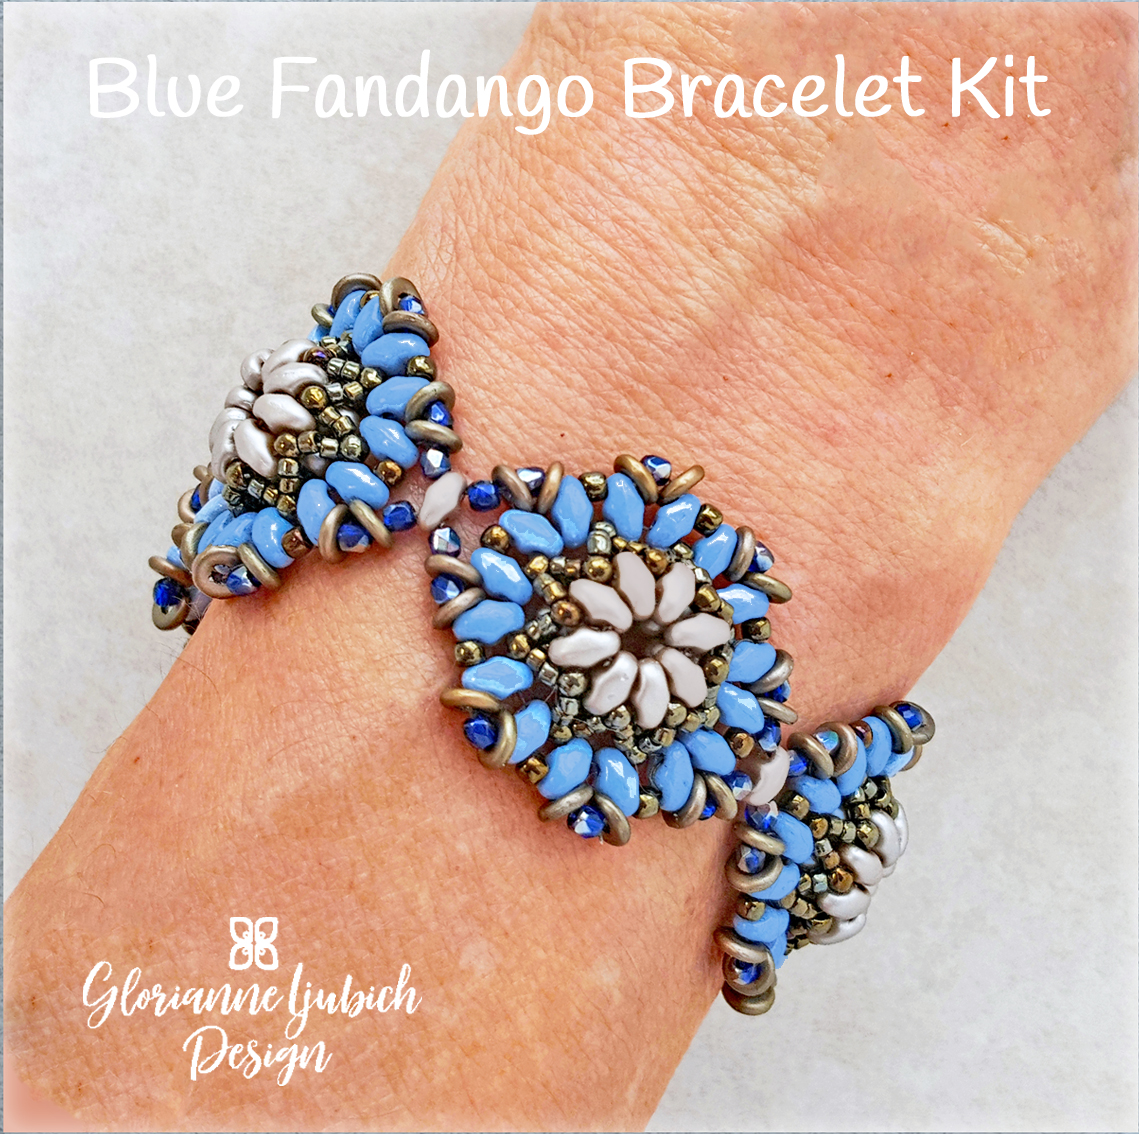 Fandango Beadweaving Bracelet Kit - Glorianne Ljubich Design